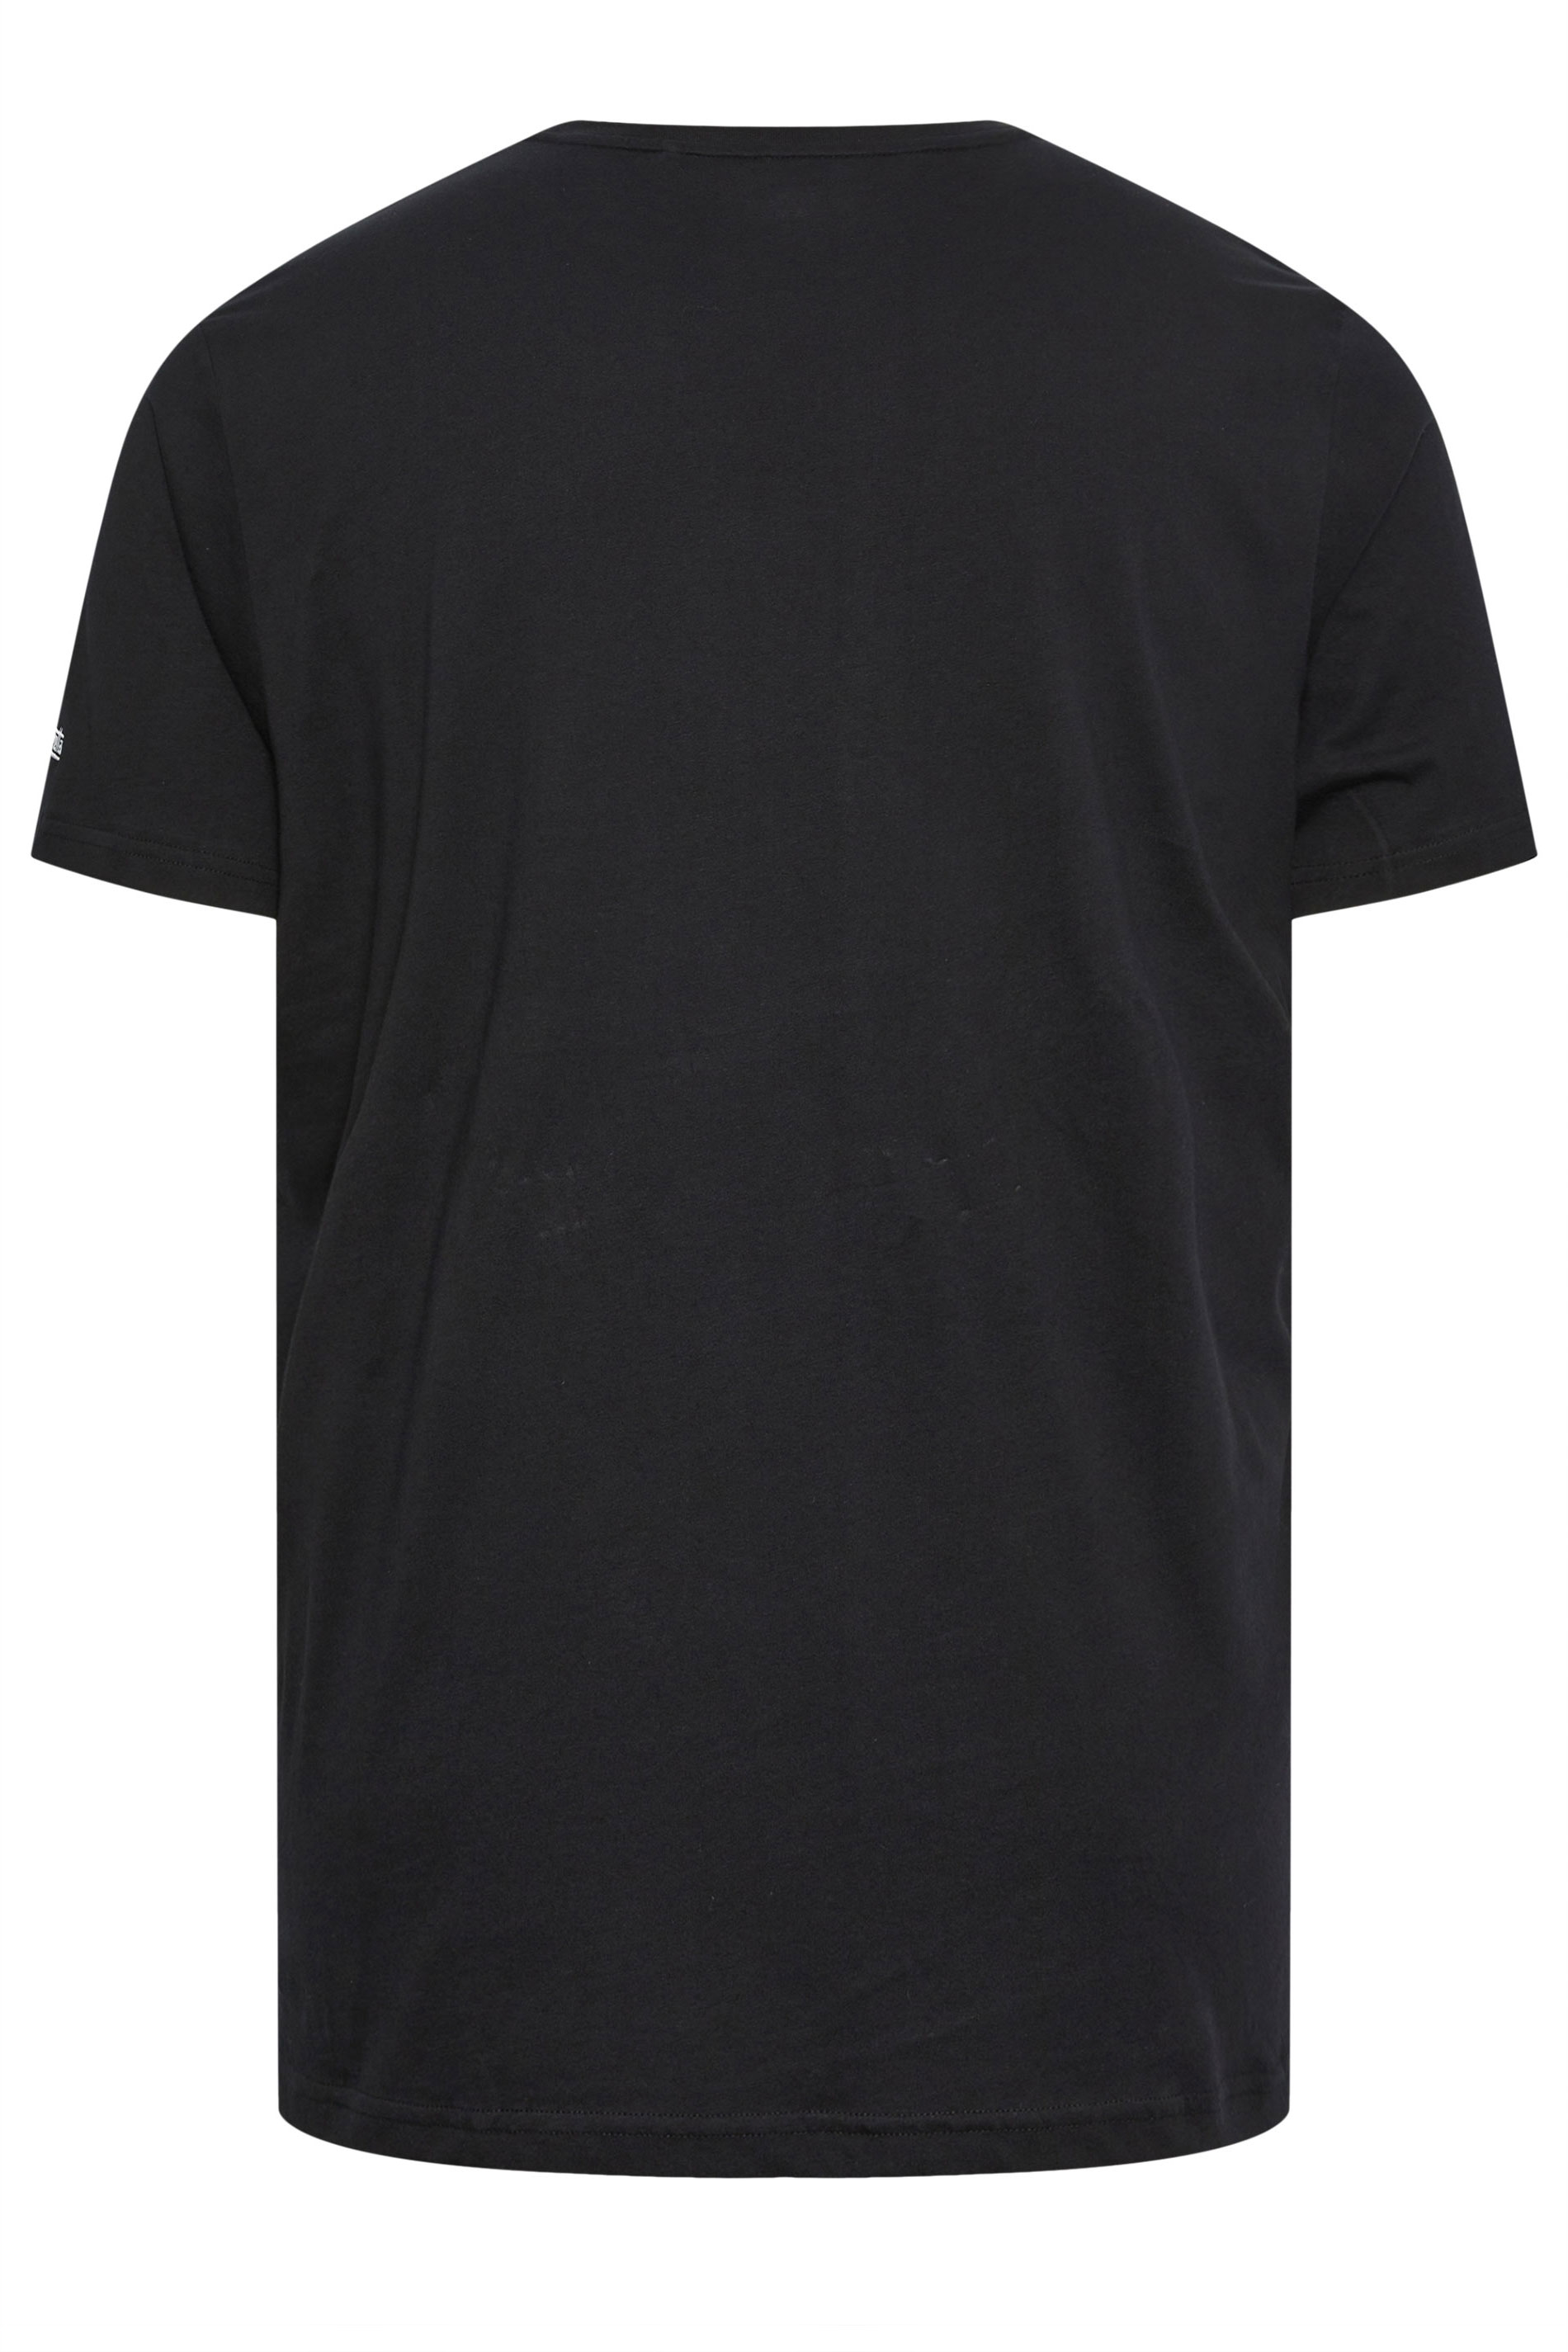 LAMBRETTA Big & Tall Black Checker Logo T-Shirt | BadRhino 3